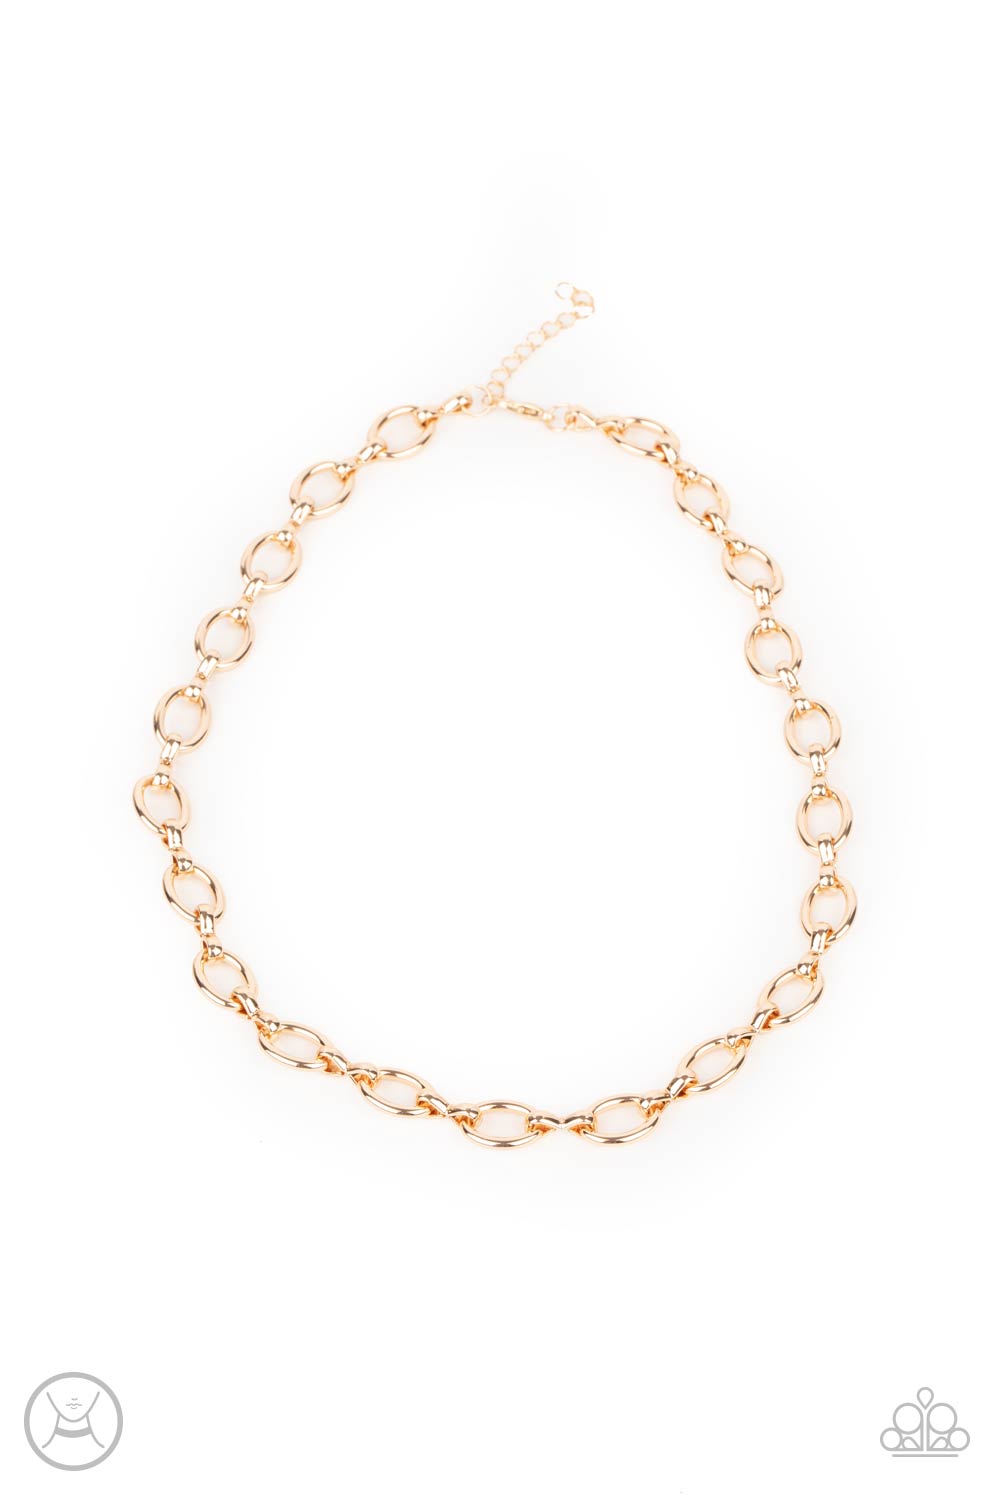 Craveable Couture​ - gold - Paparazzi necklace